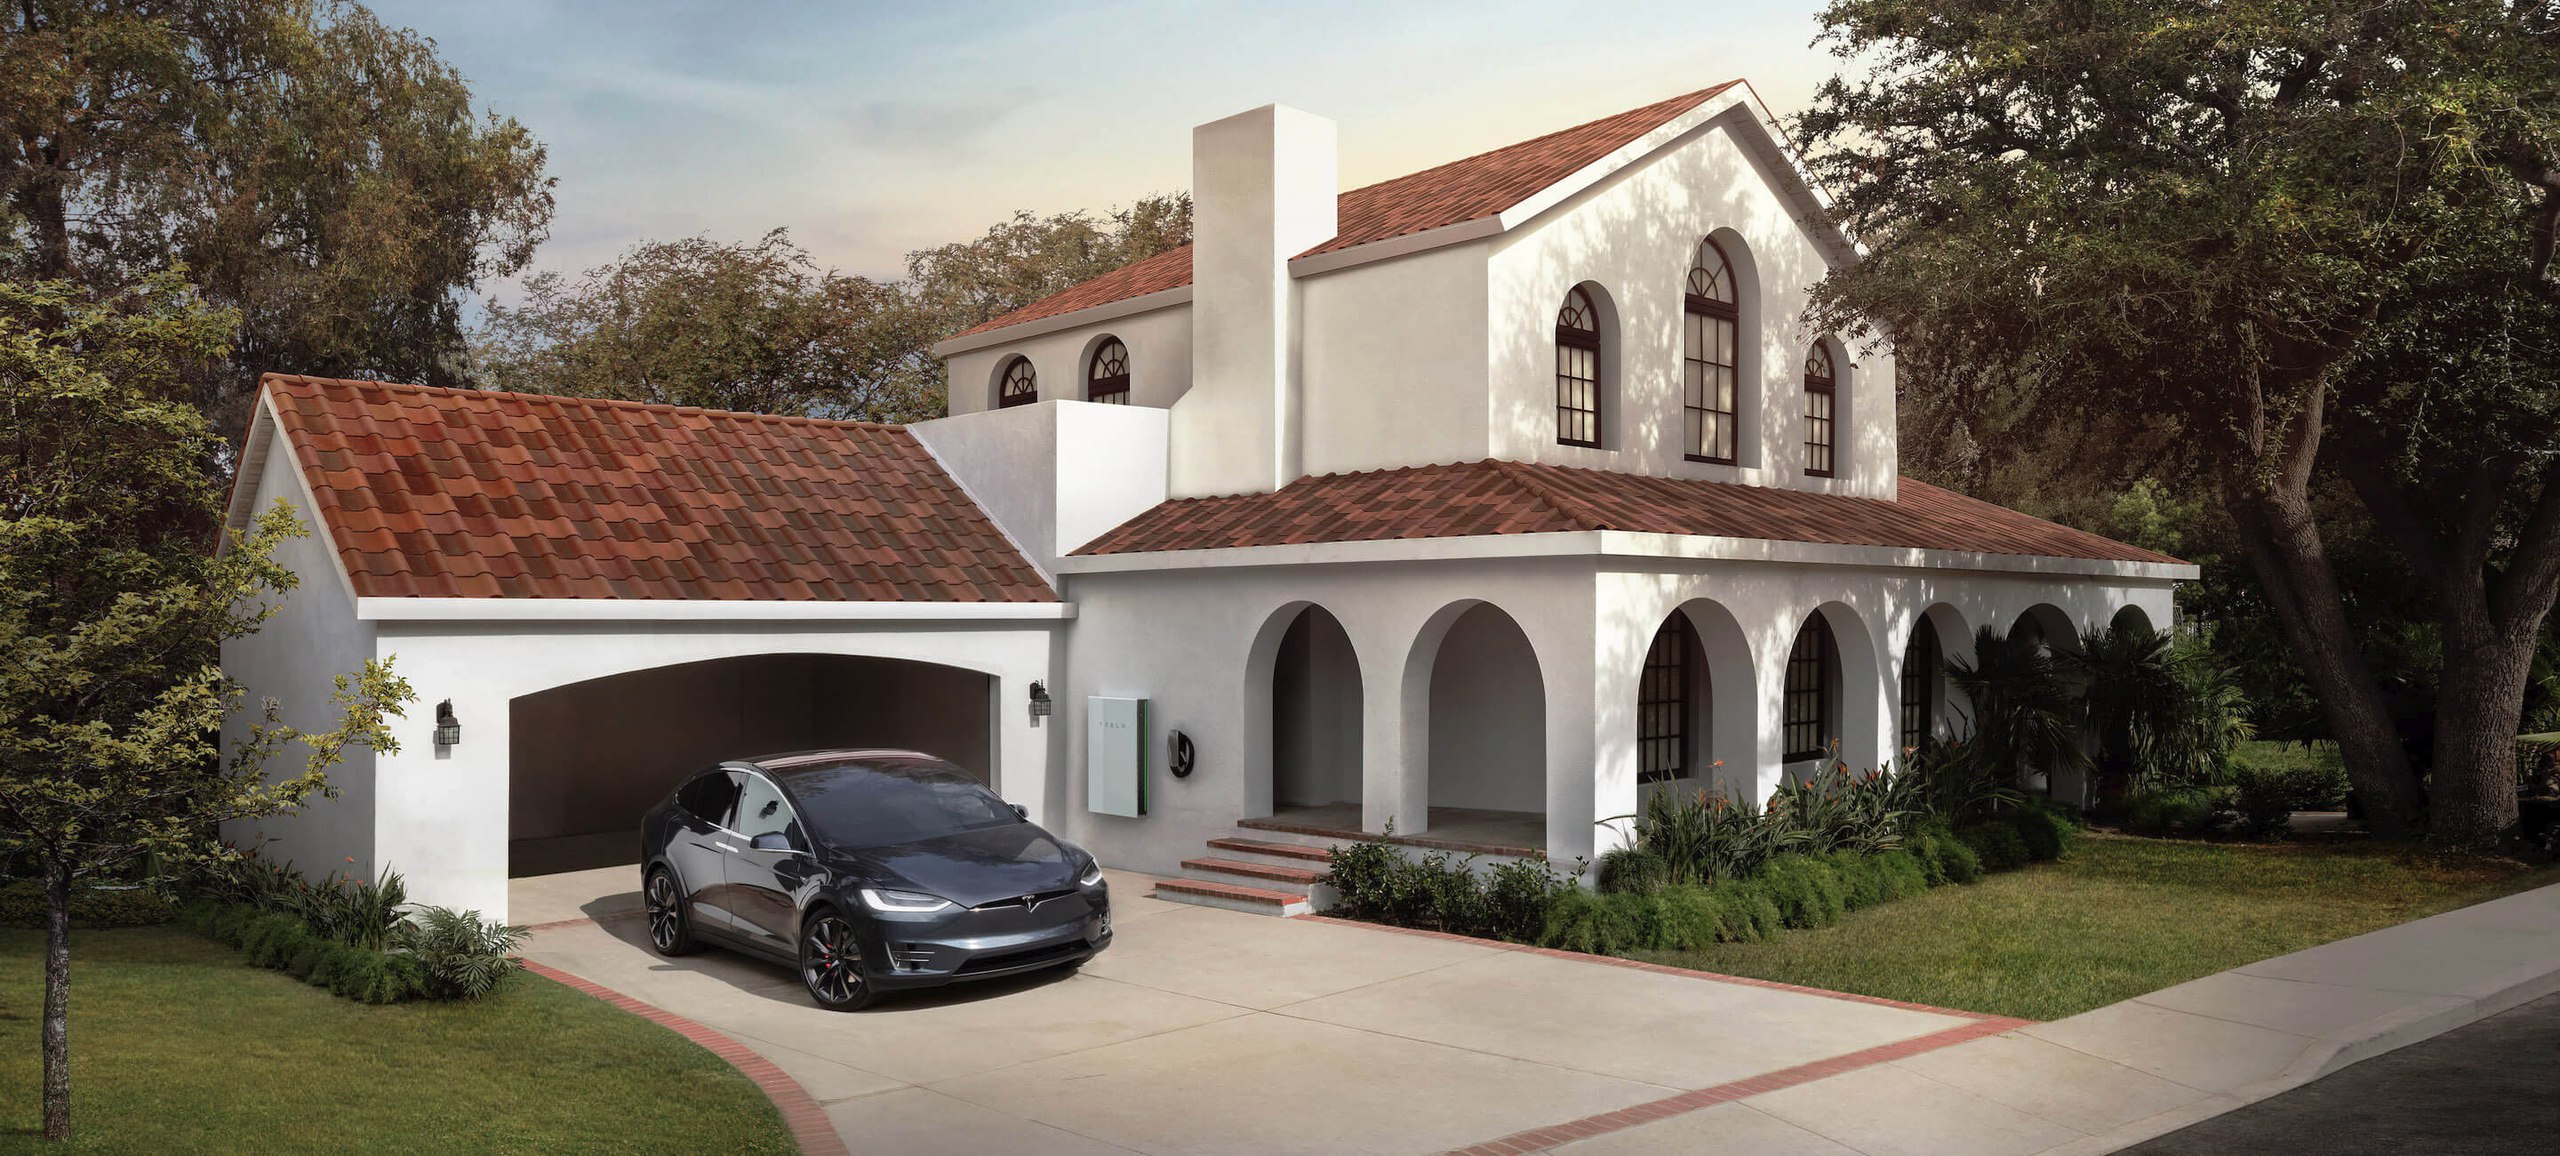 солнечная крыша от Tesla картинка